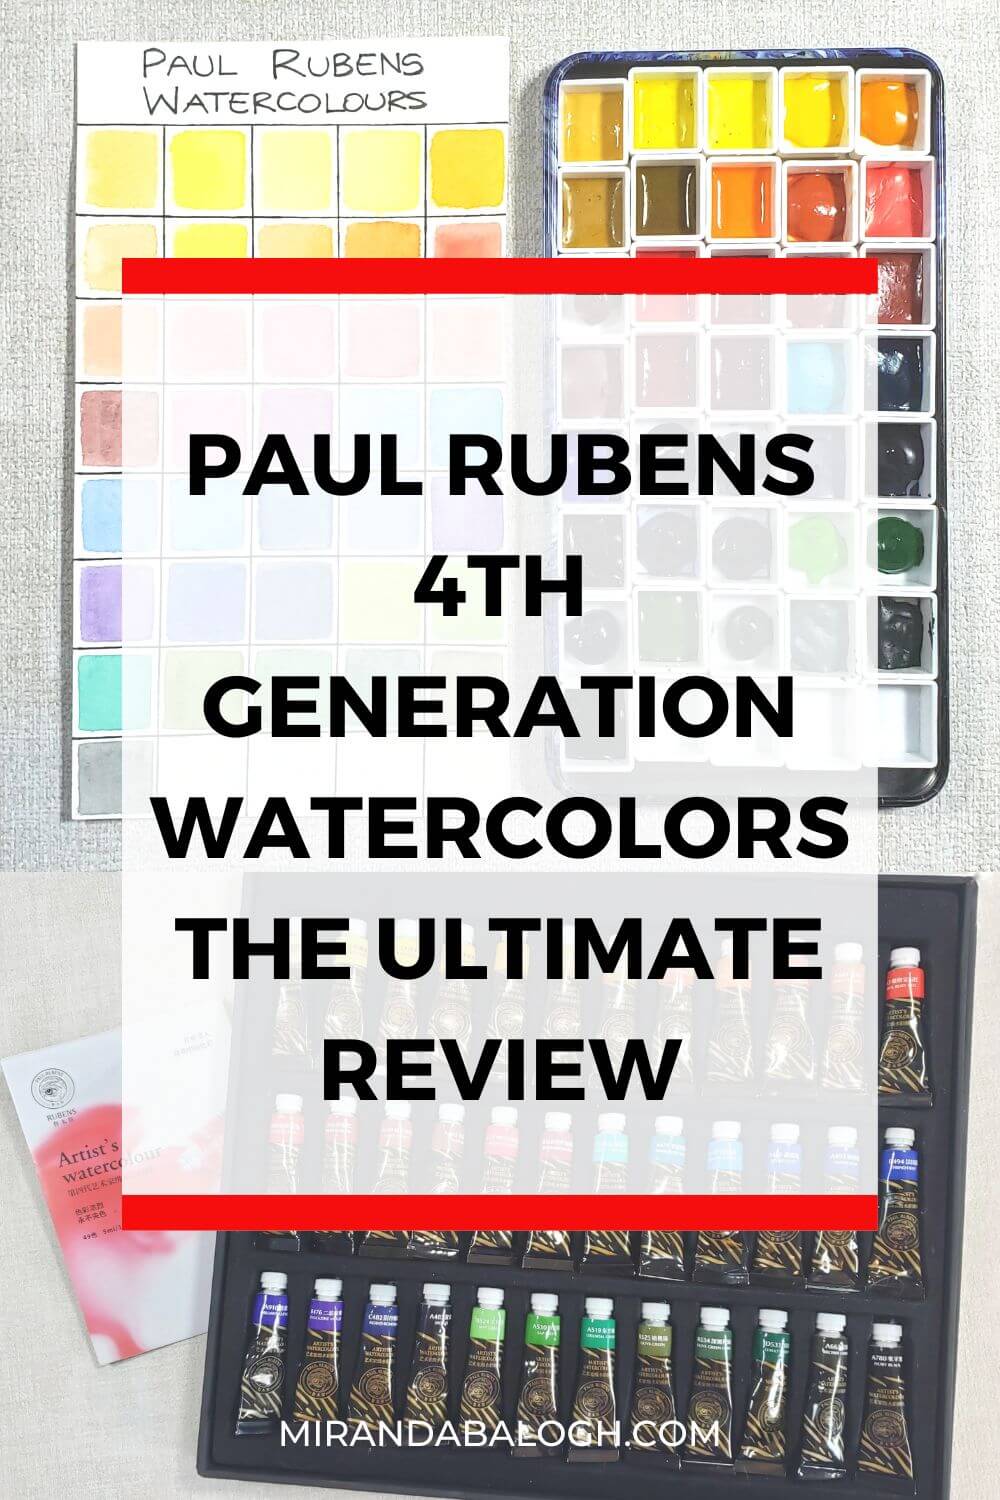 Paul Rubens Watercolor Review - Lightfast Tests, Tubes, Half Pan